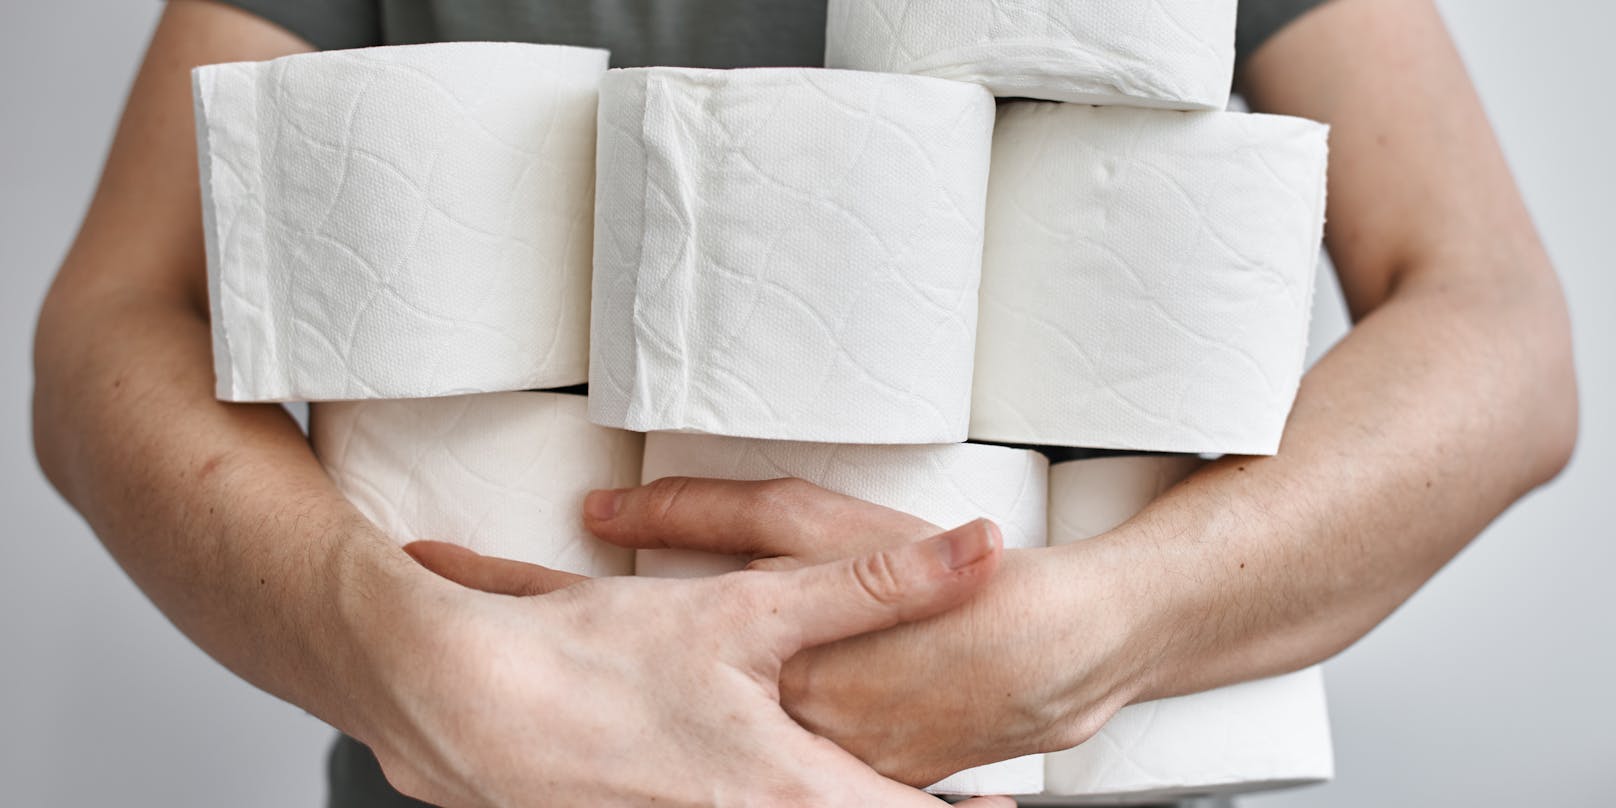 Ein erwachsener Mensch kommt mit einer Rolle Toilettenpapier locker drei Tage aus.